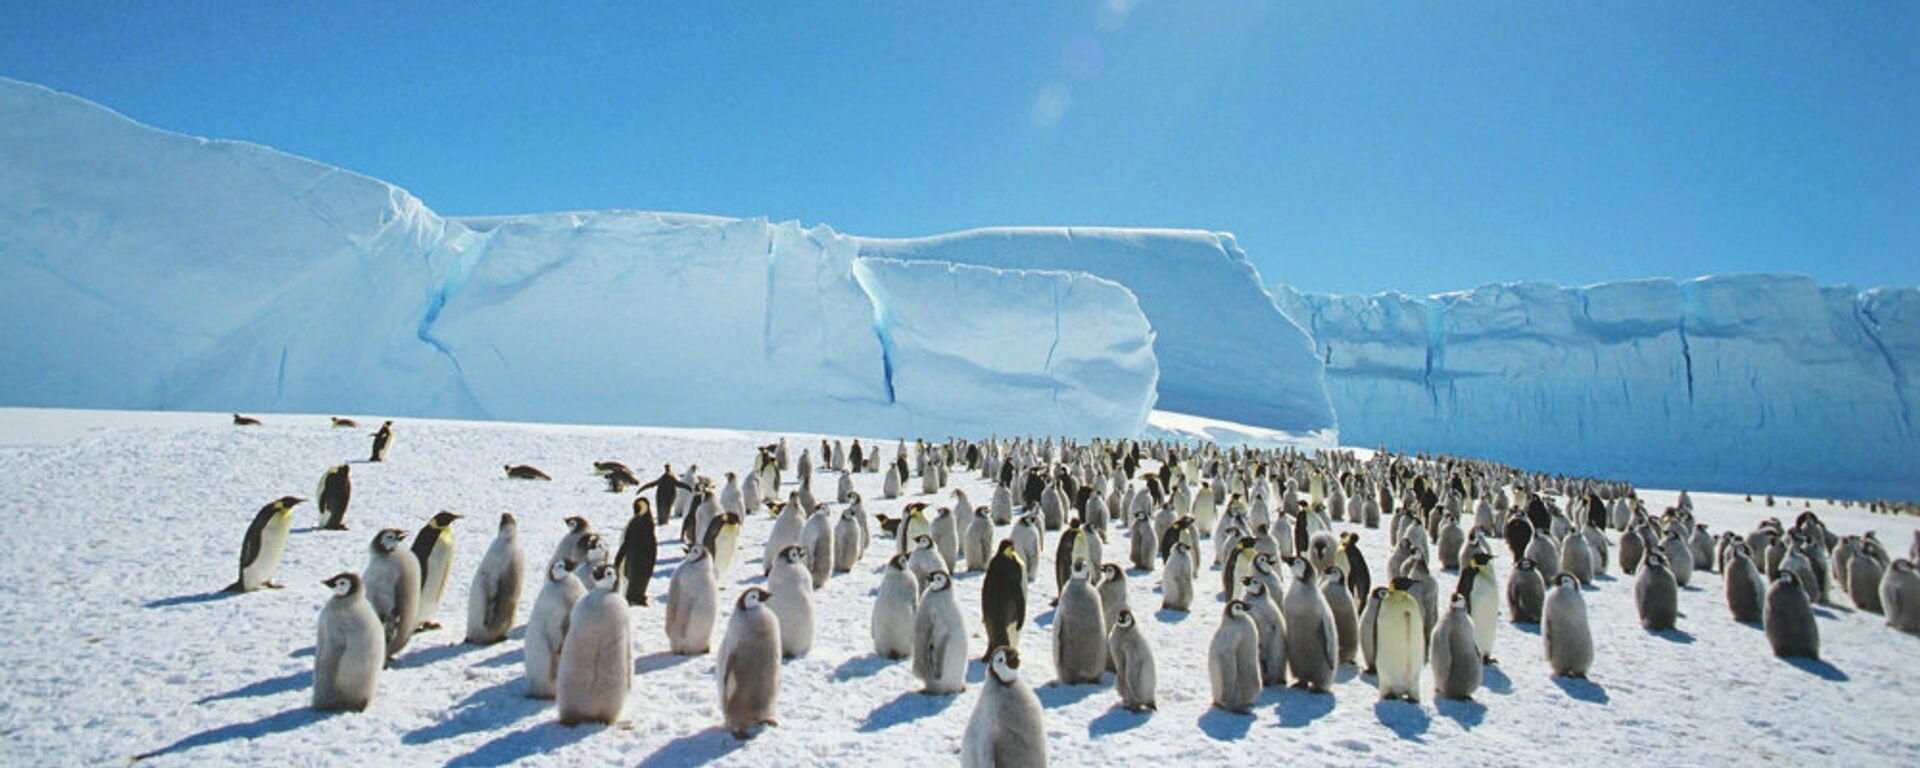 Царски пингвини у близини совјетске истраживачке станице на Антарктику - Sputnik Србија, 1920, 15.02.2021